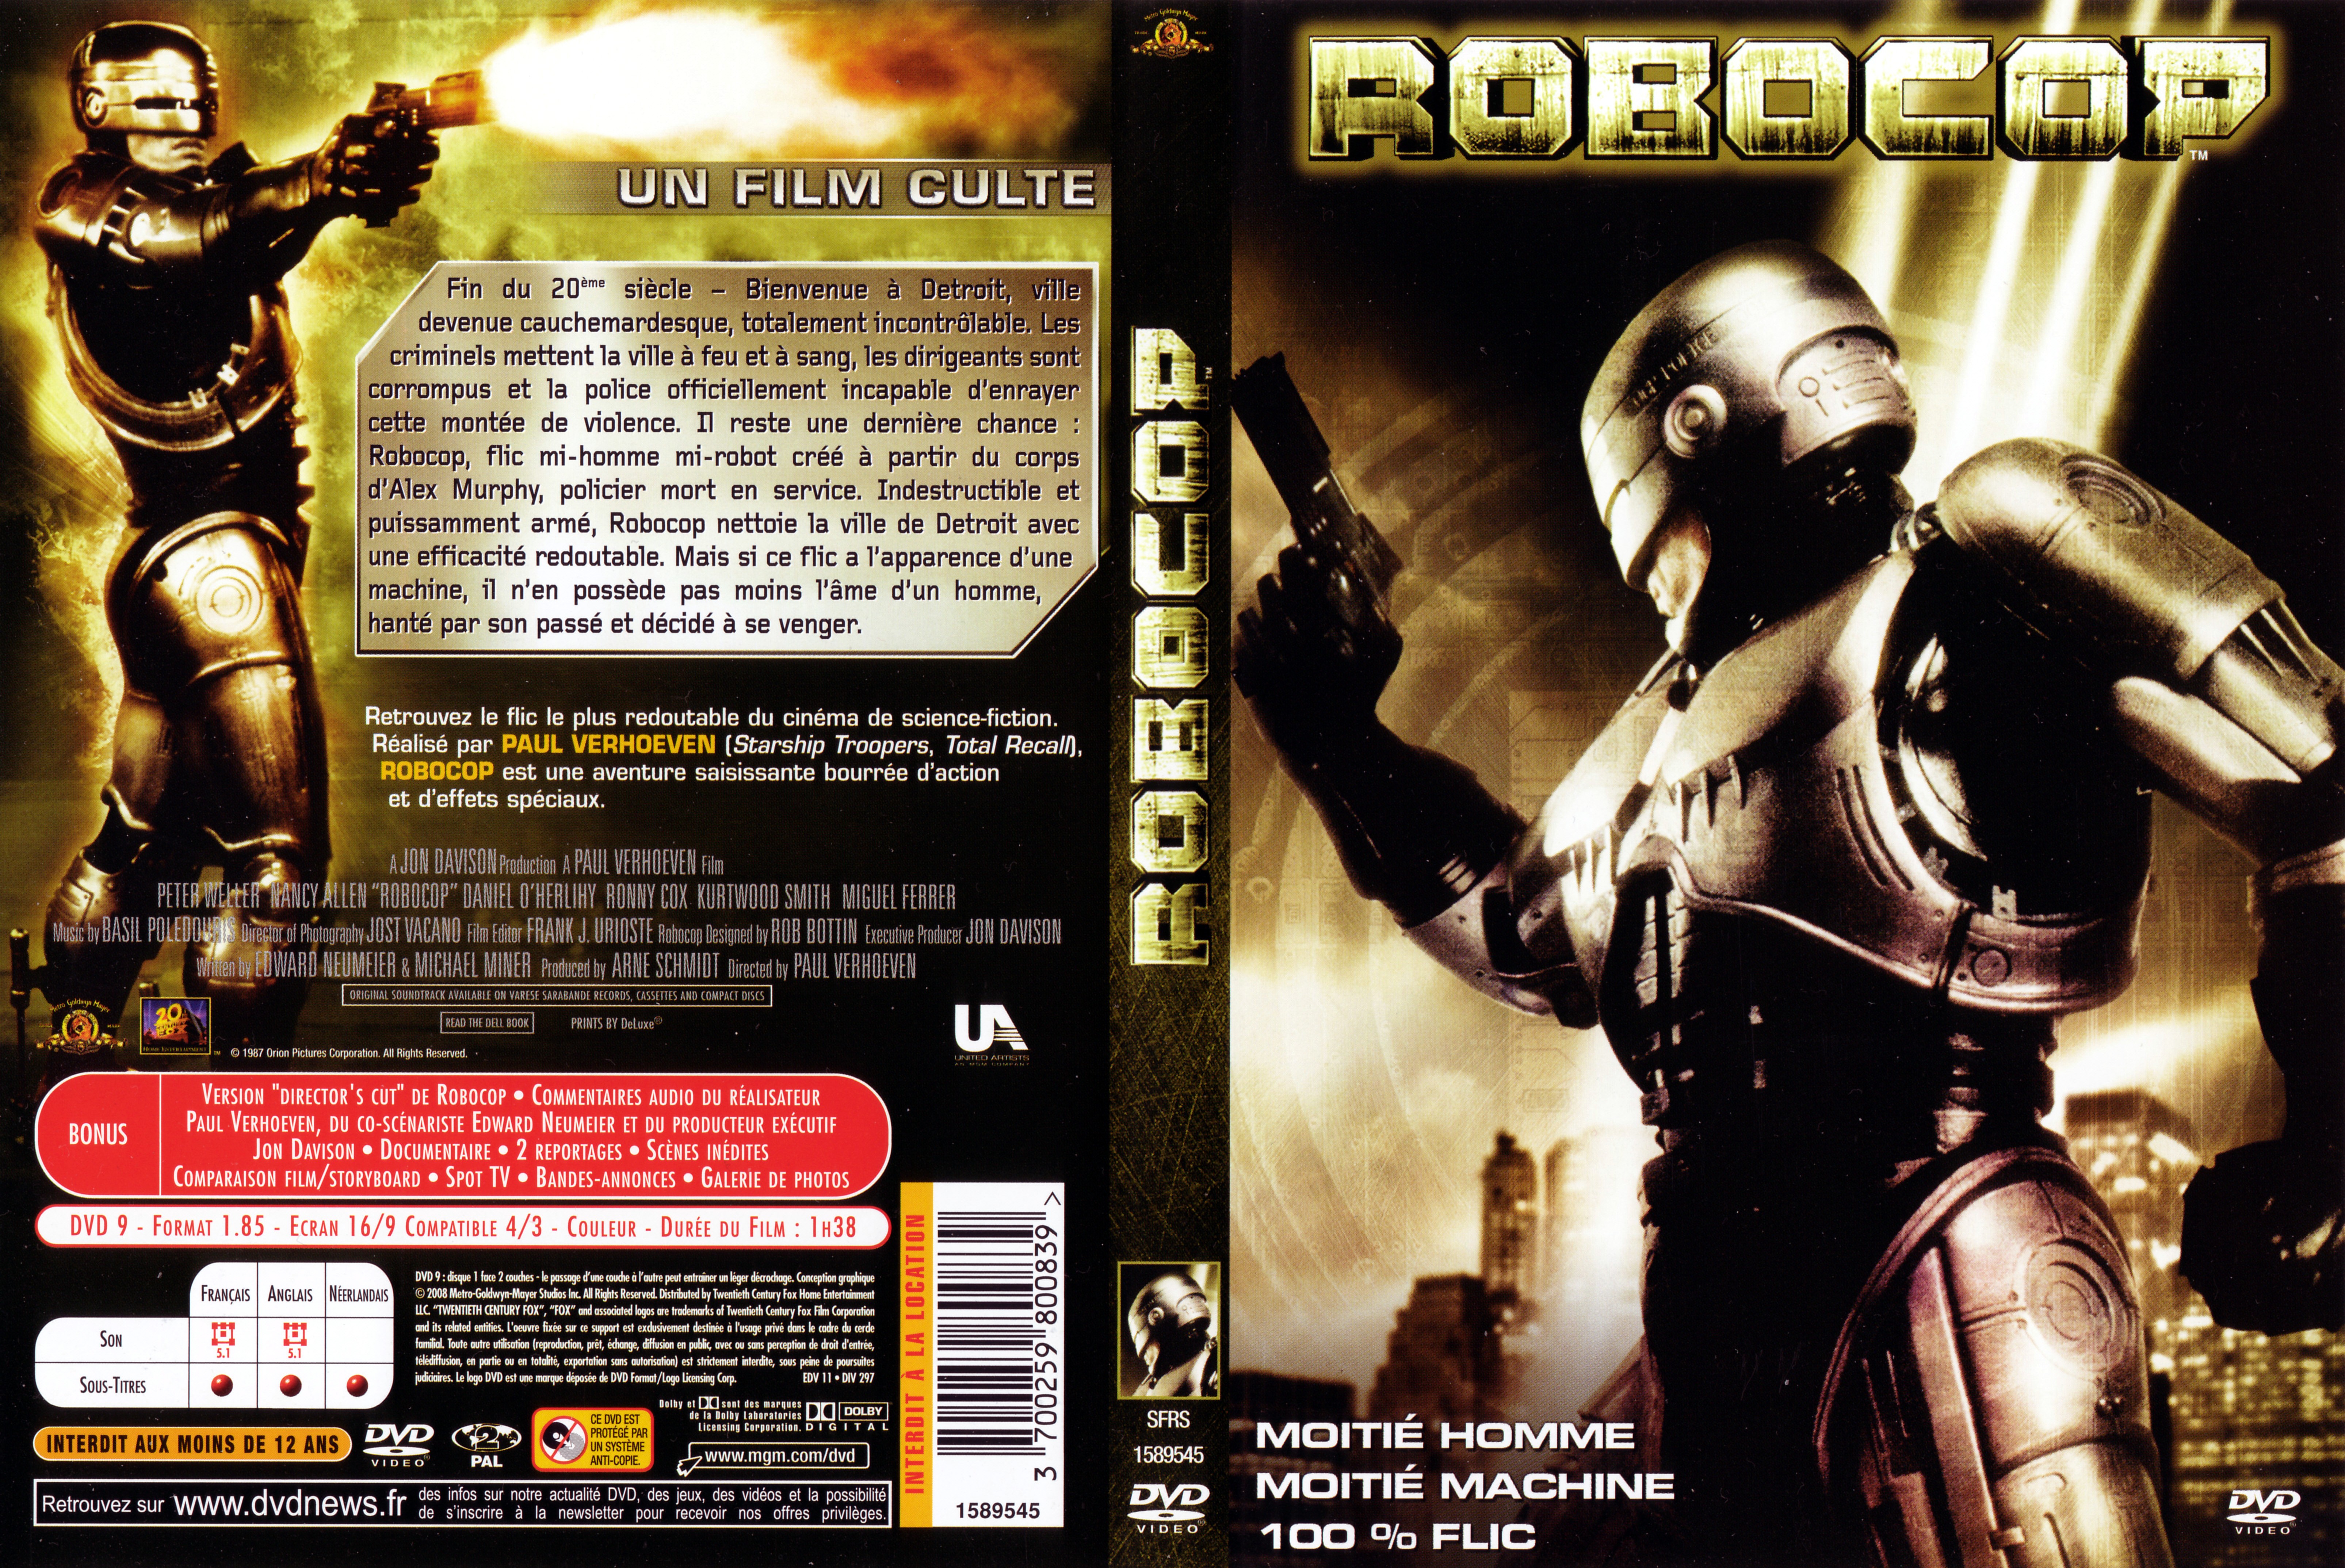 Jaquette DVD Robocop v5